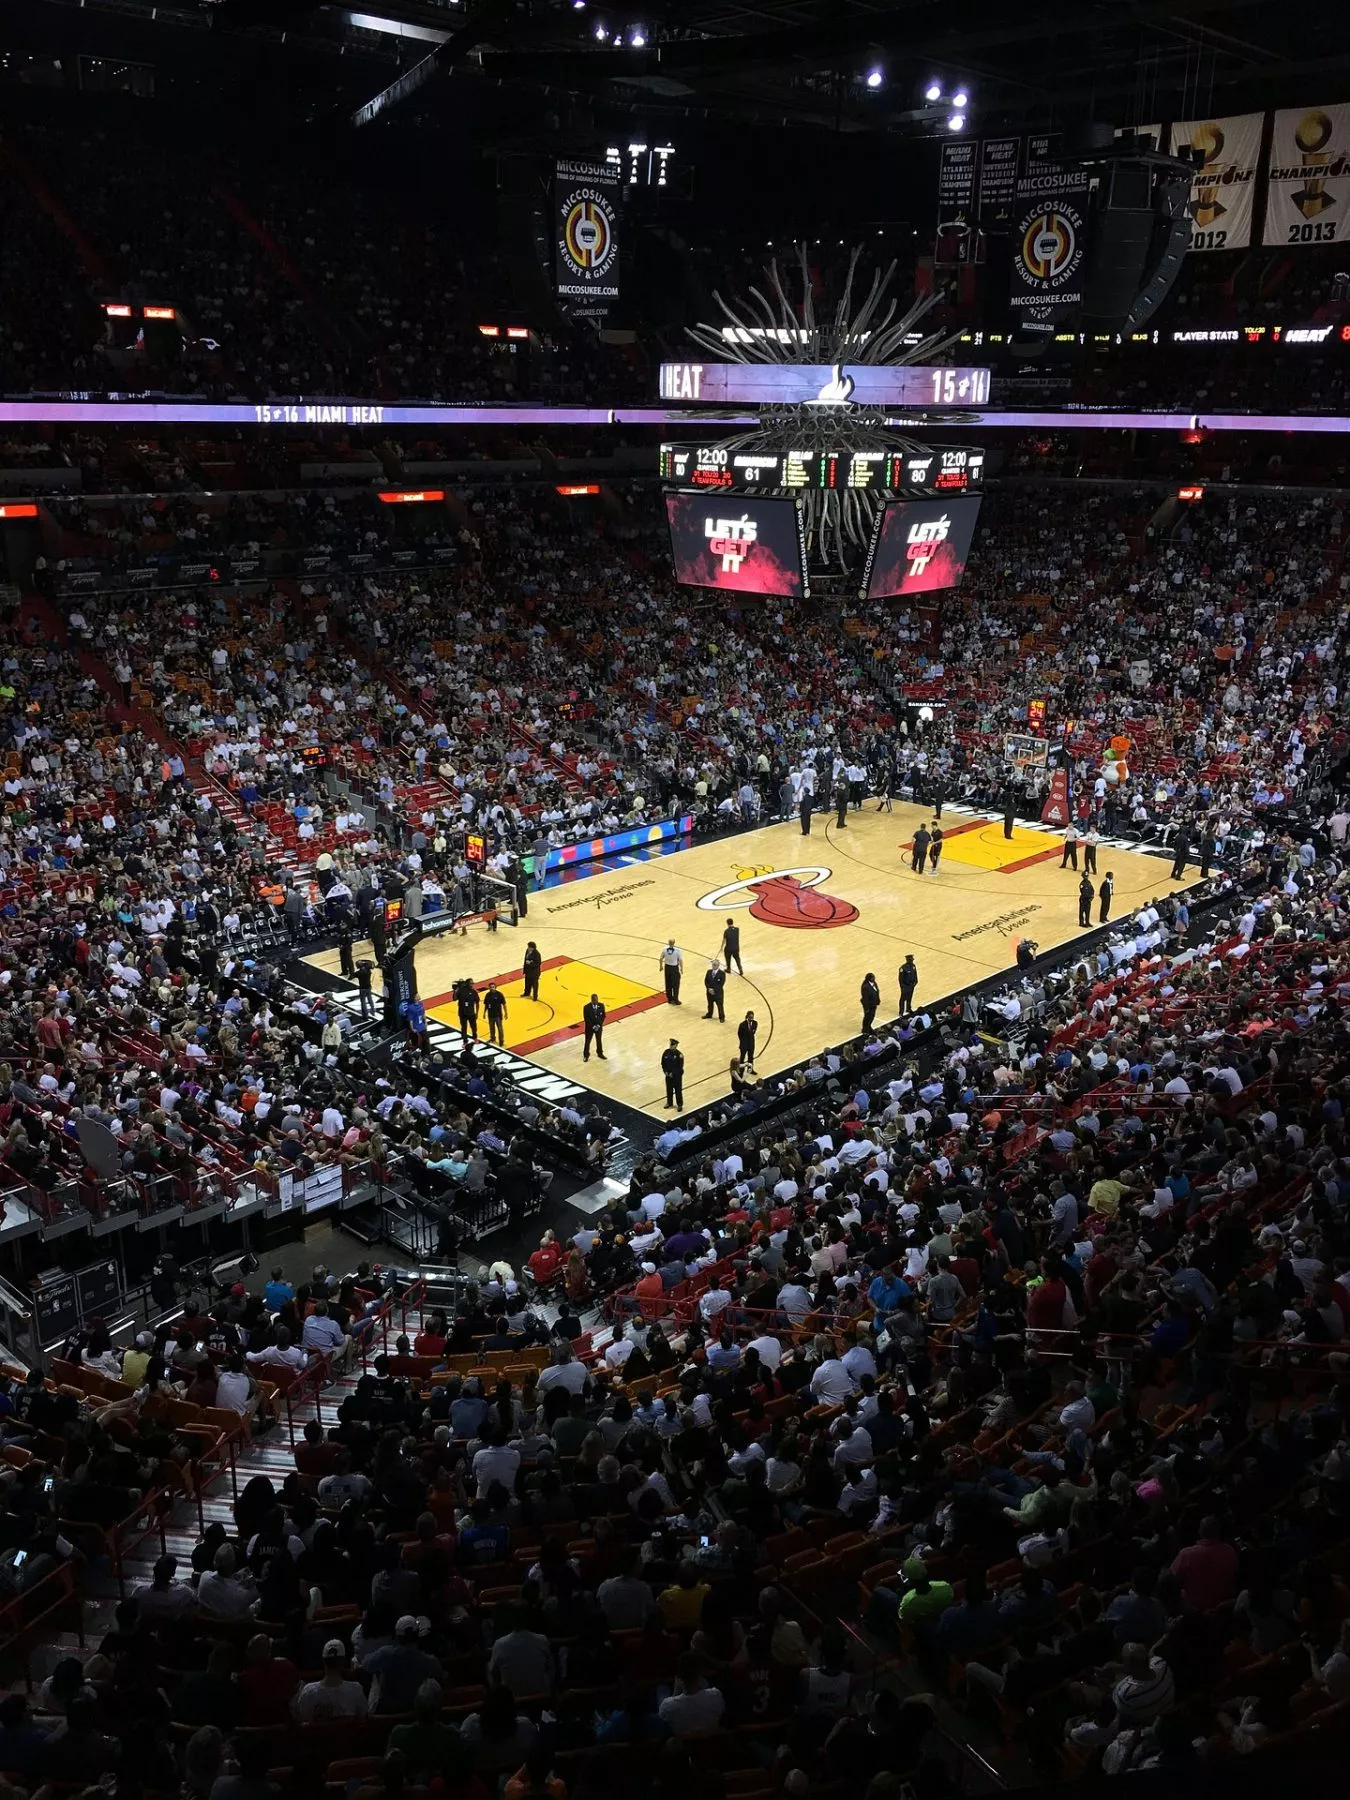 Crypto exchange FTX heeft naamgevingsrechten voor NBA-stadion Miami veiliggesteld